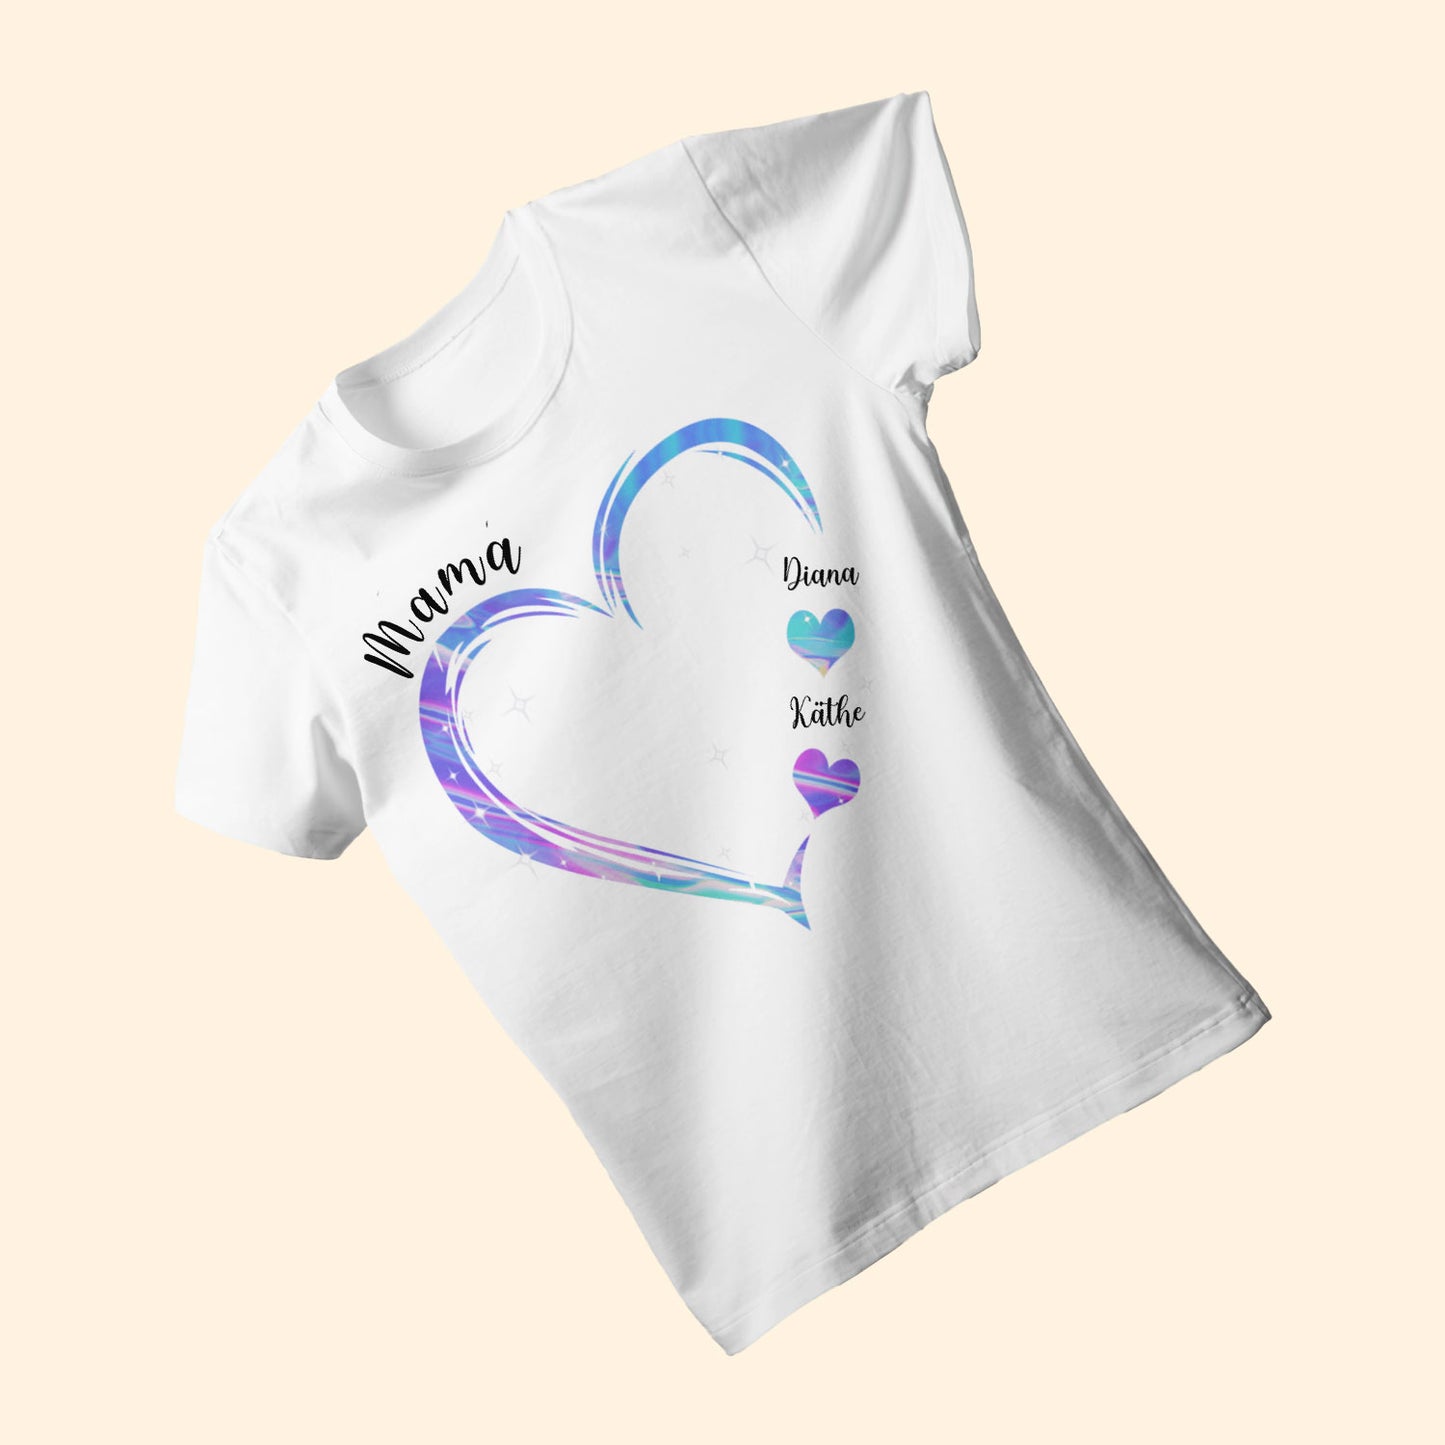 Mamas Herz - Personalisierte Geschenke - T-shirt Für Mama/oma